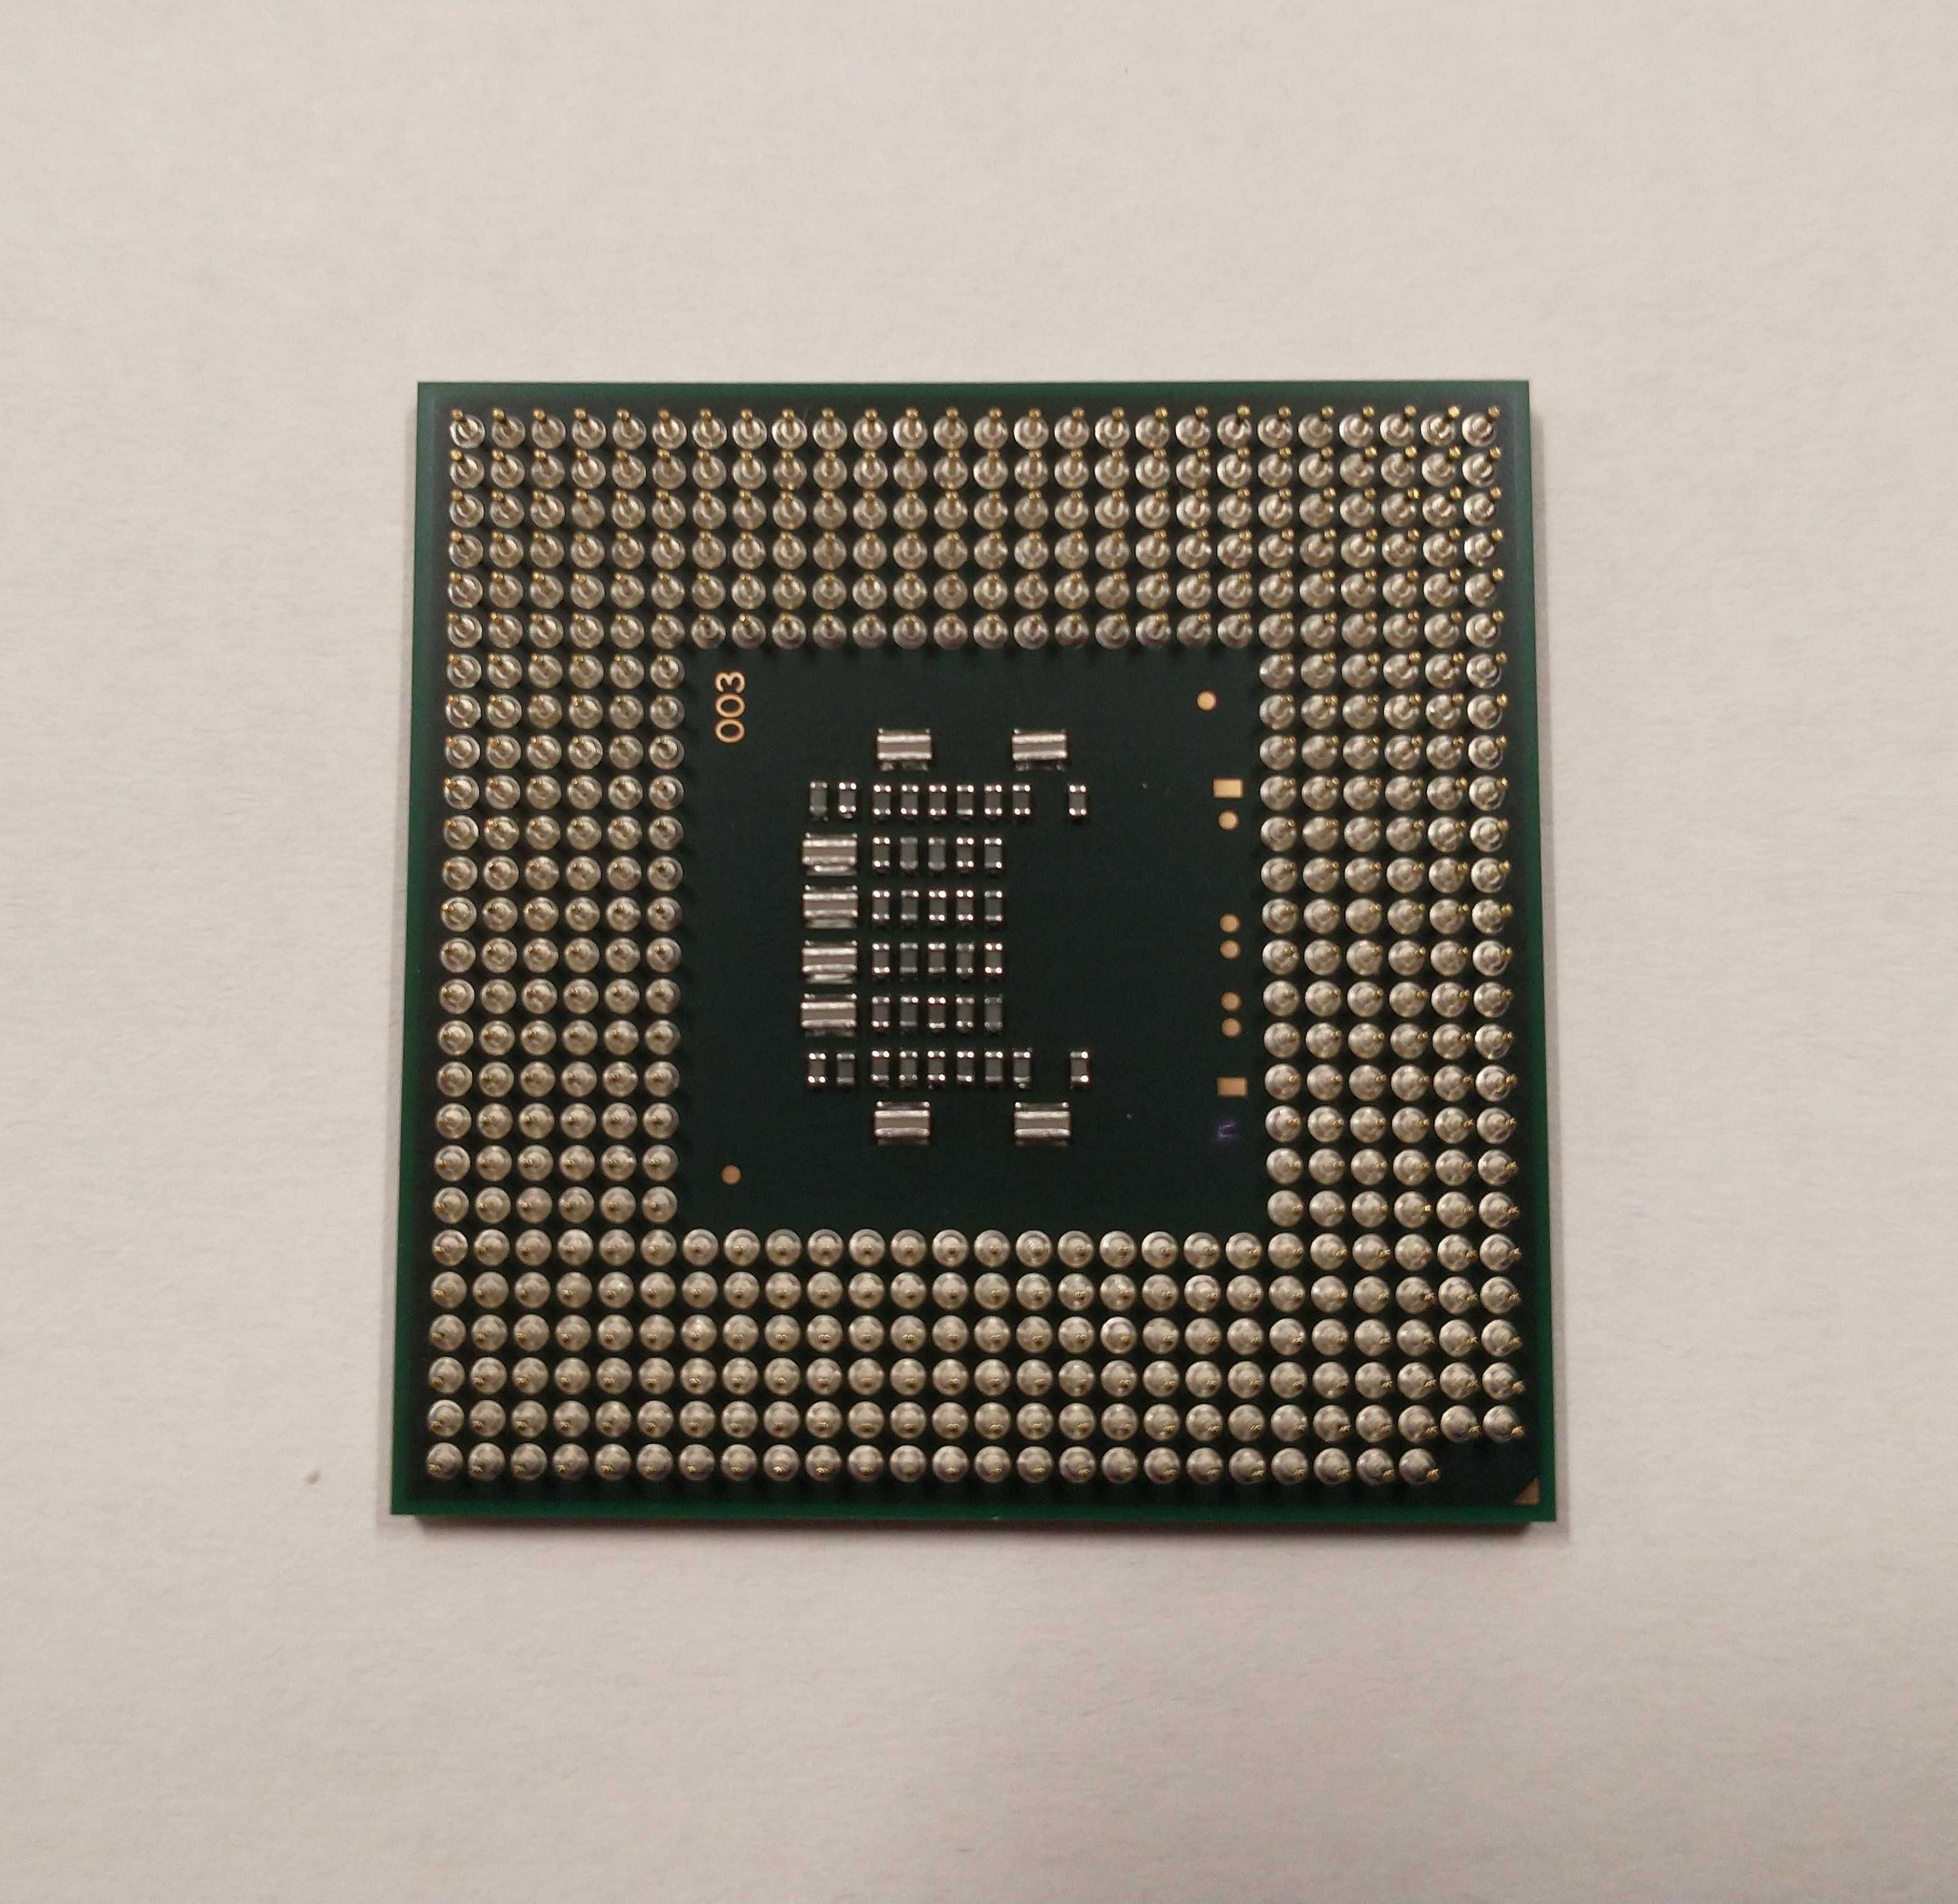 Procesor Intel Celeron Dual Core T1600